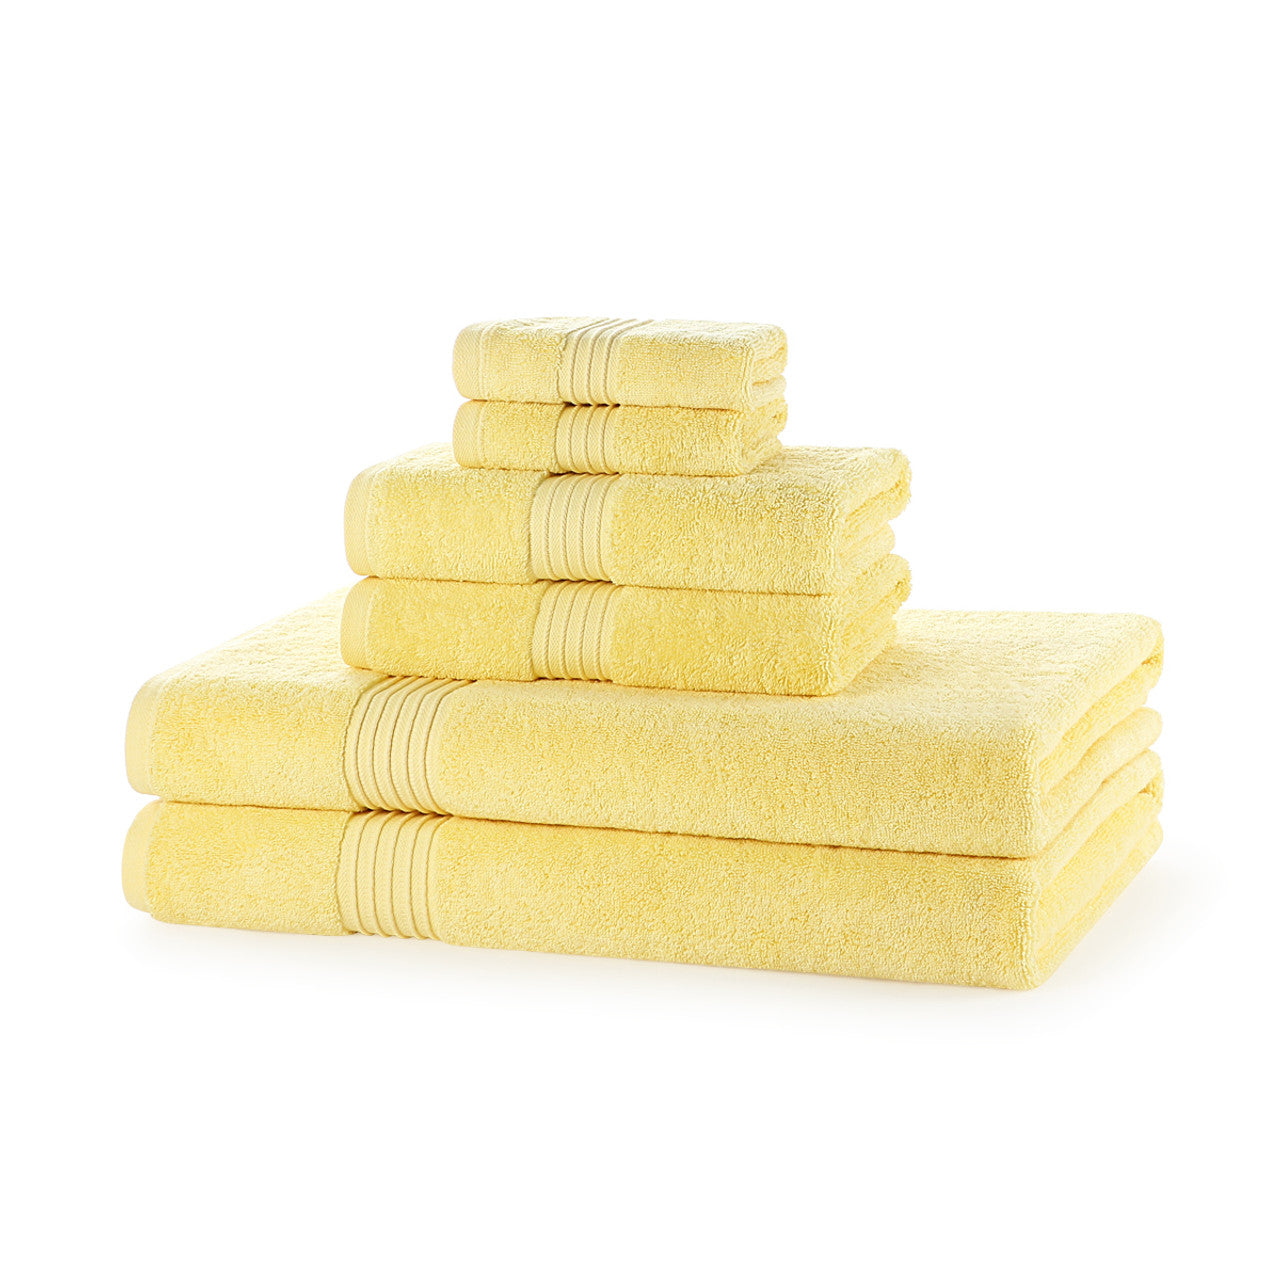 Luxury 700GSM Towel Bale – 6 Piece Super Soft 2 Face Cloths, 2 Hand Towels, 2 Bath Sheets